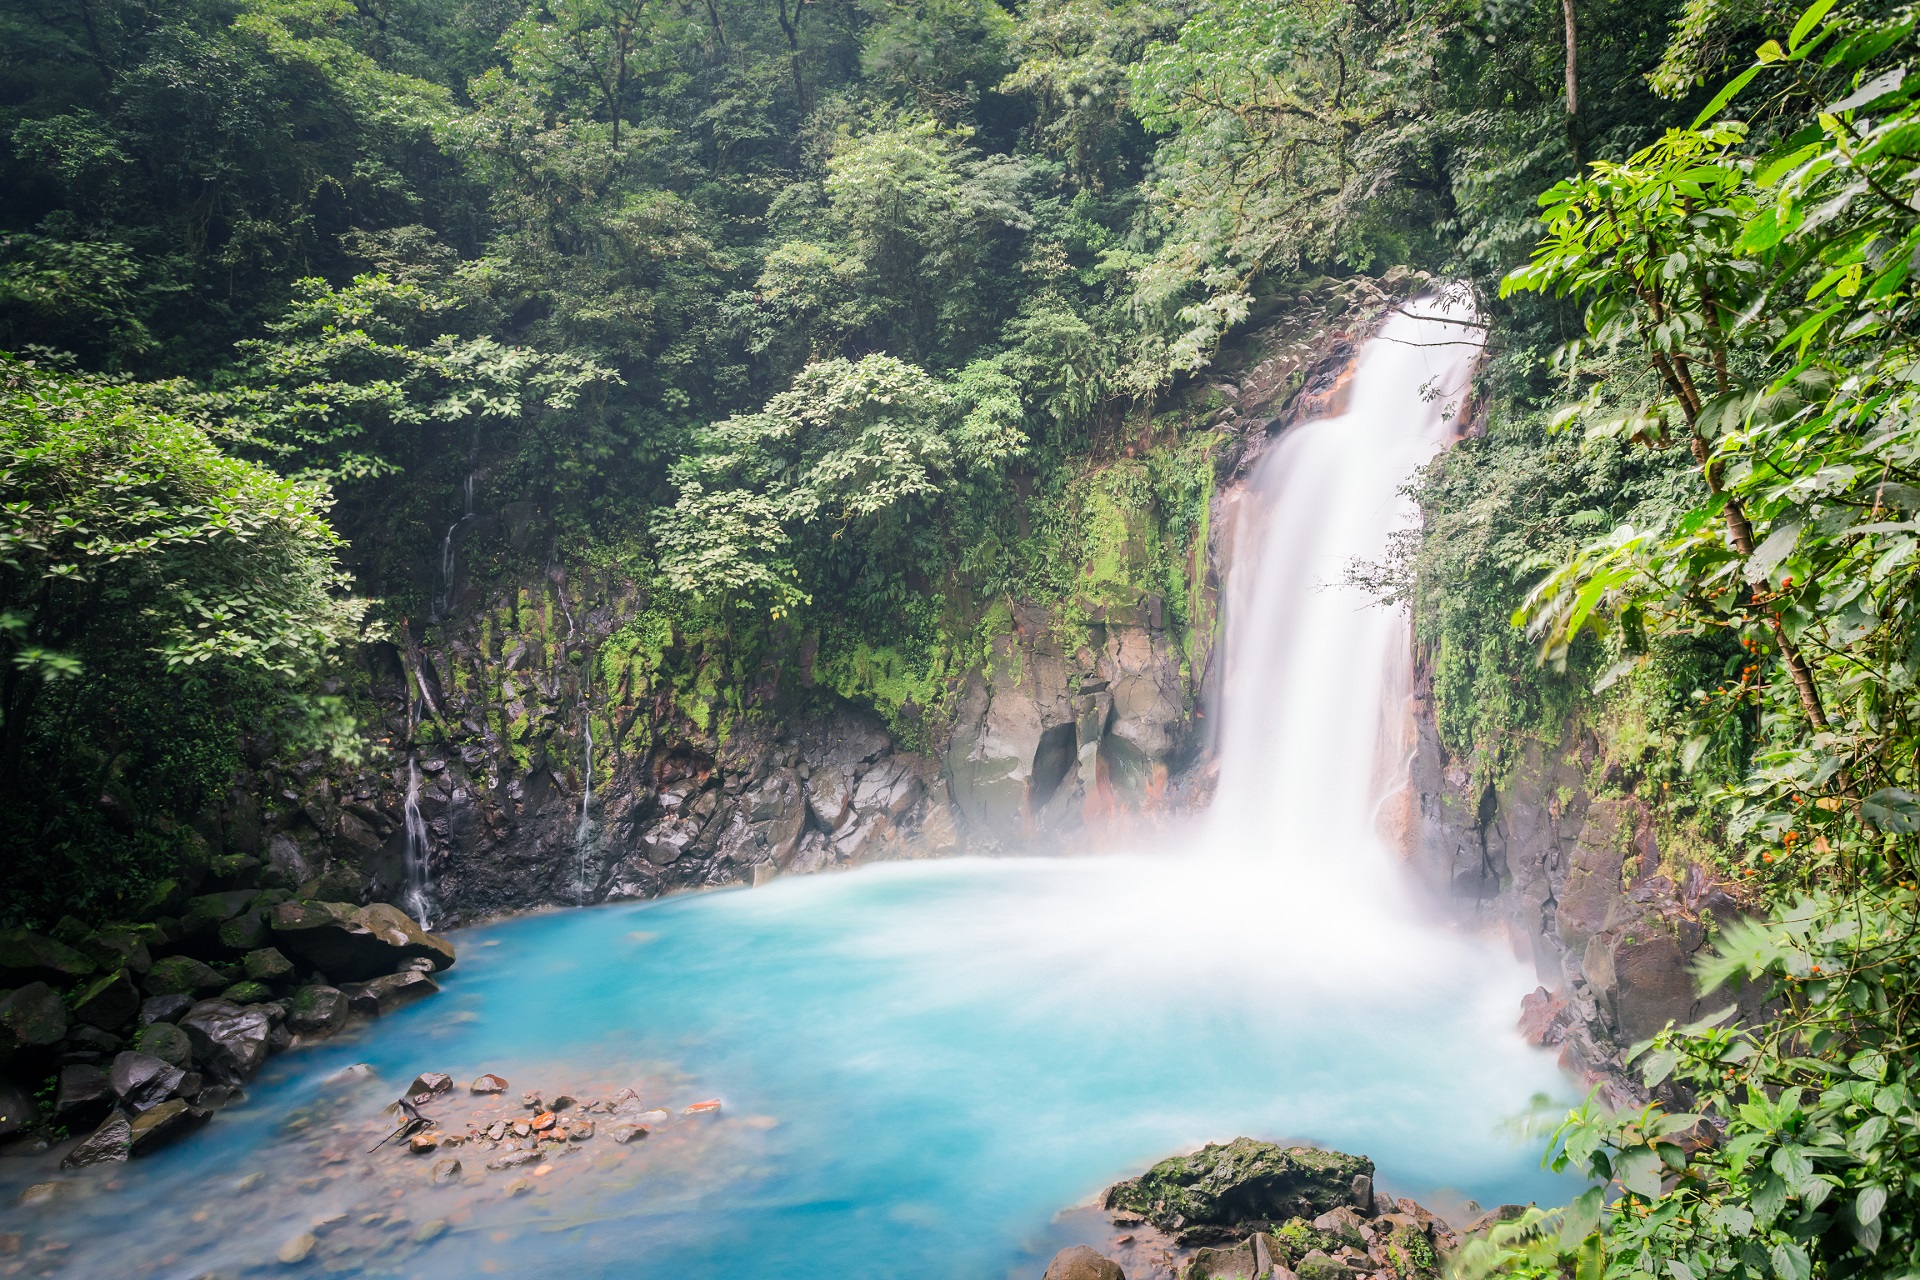 Wasserfällt gibt es unzählige in Costa Rica, der Rio Celeste ist durch seine Farbe ganz besonders toll anzusehen.